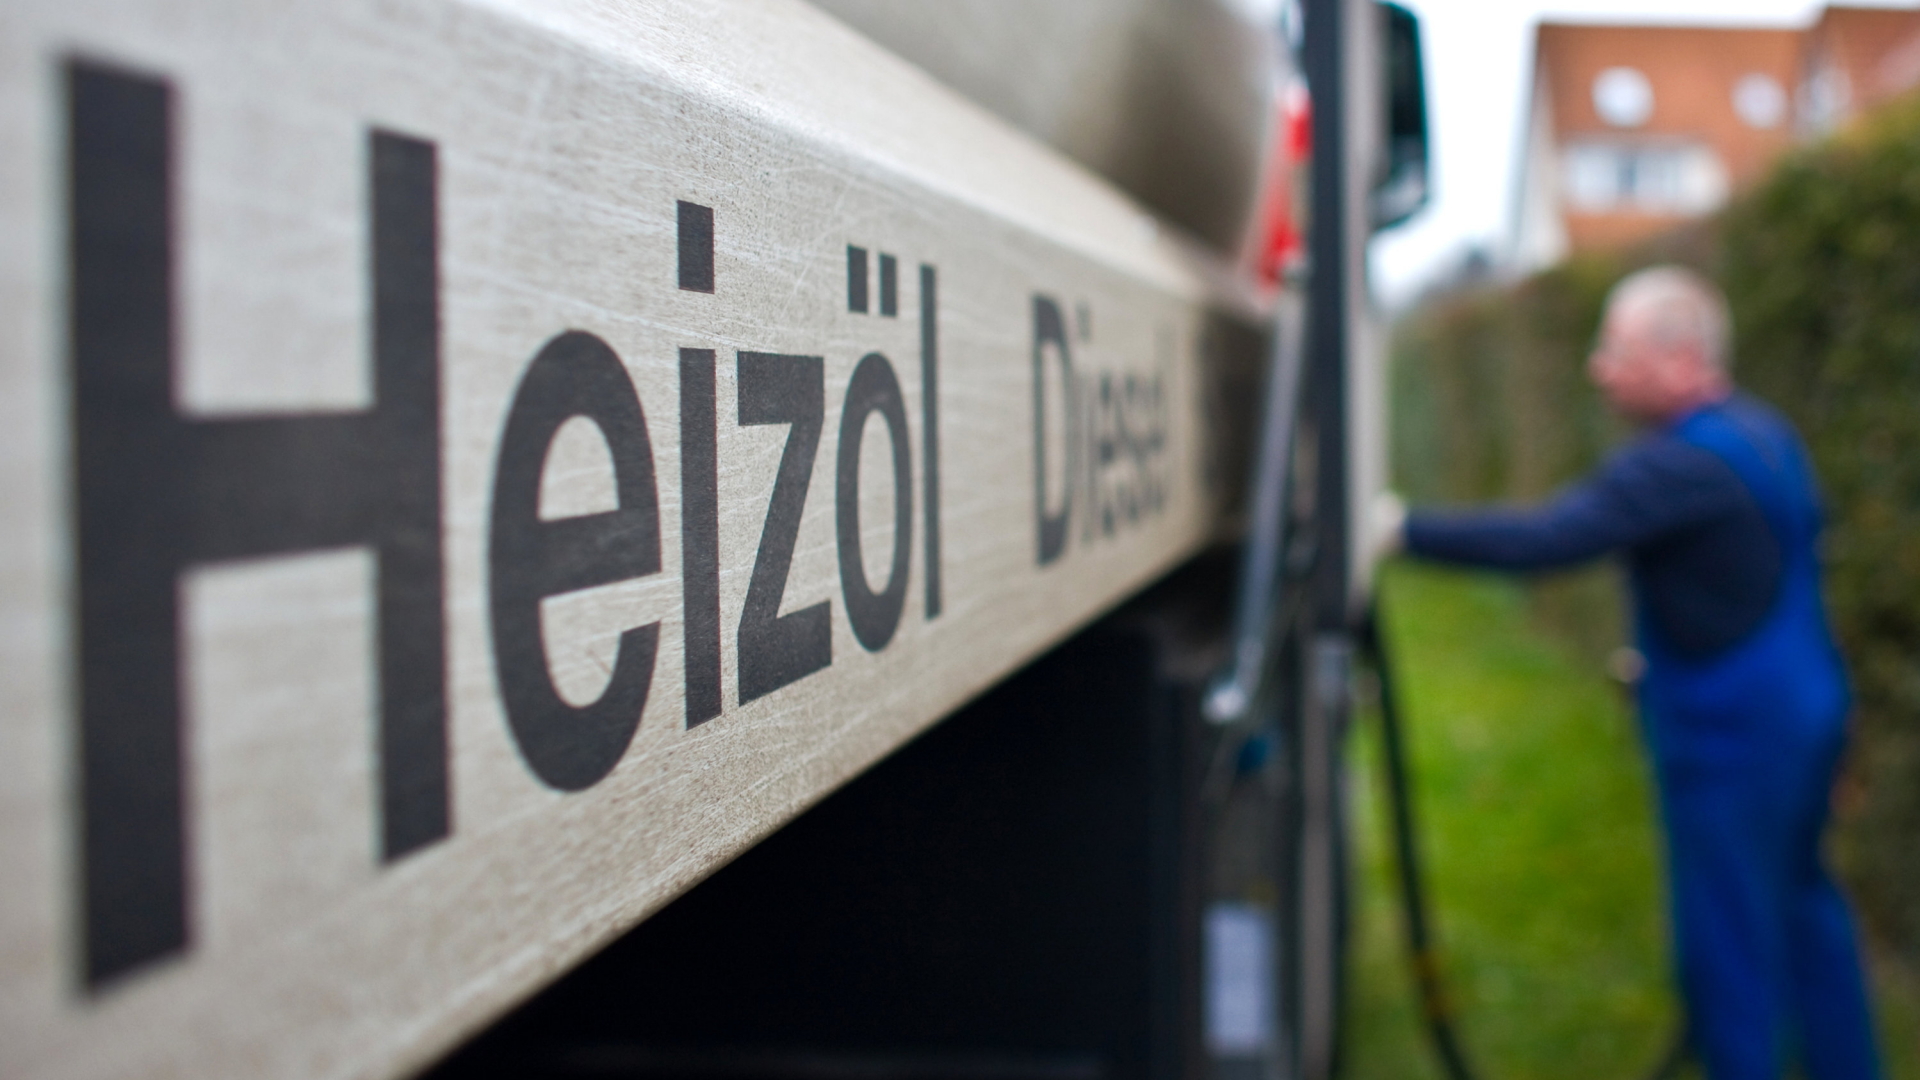 "Heizöl" und "Diesel" steht auf einem Tankfahrzeug eines Heizöllieferanten.